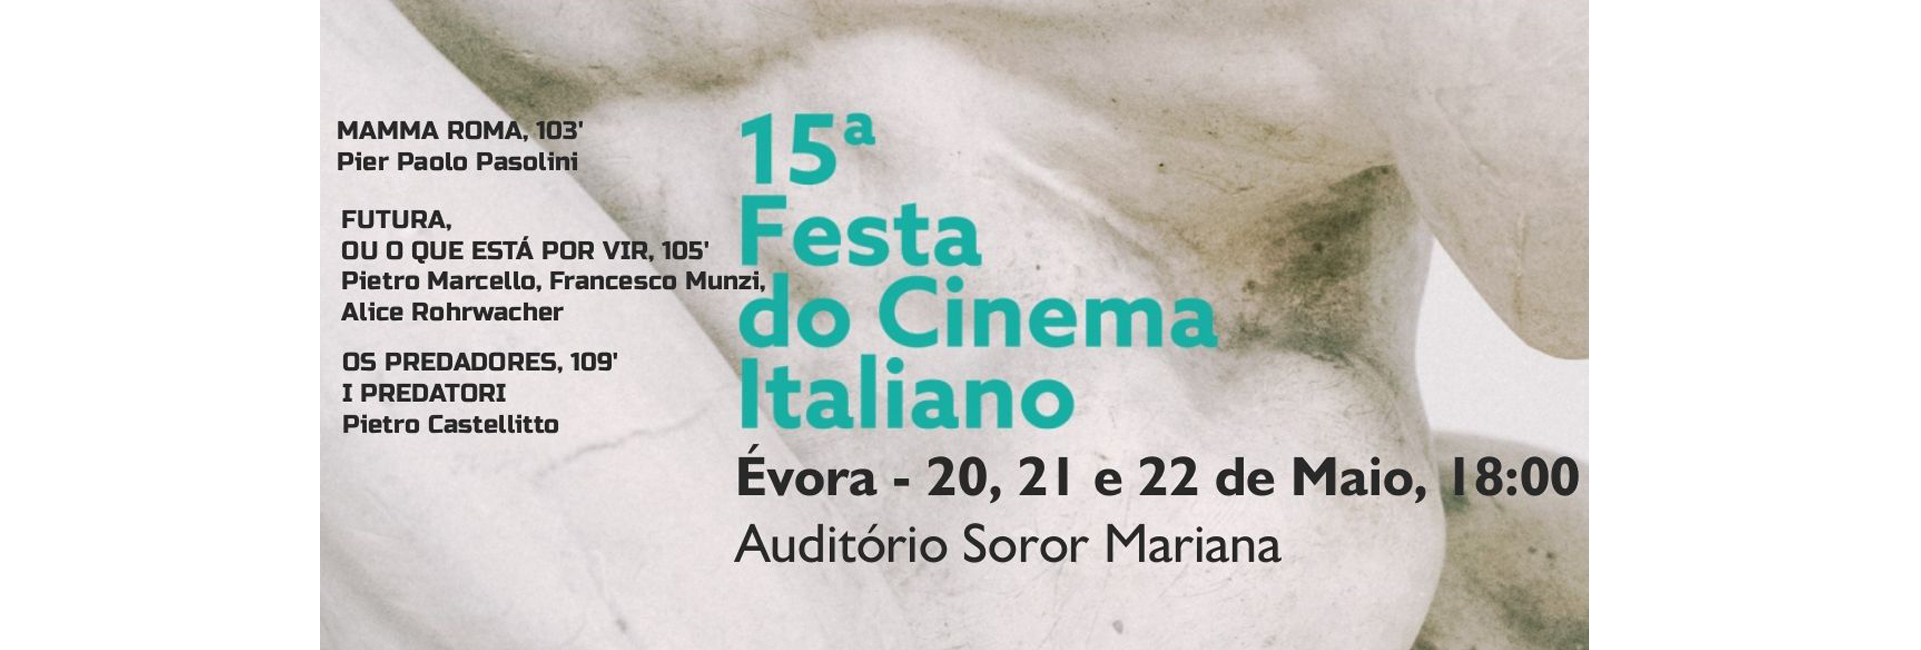 (Português) MAMMA ROMA, um filme de Pier Paolo Pasolini